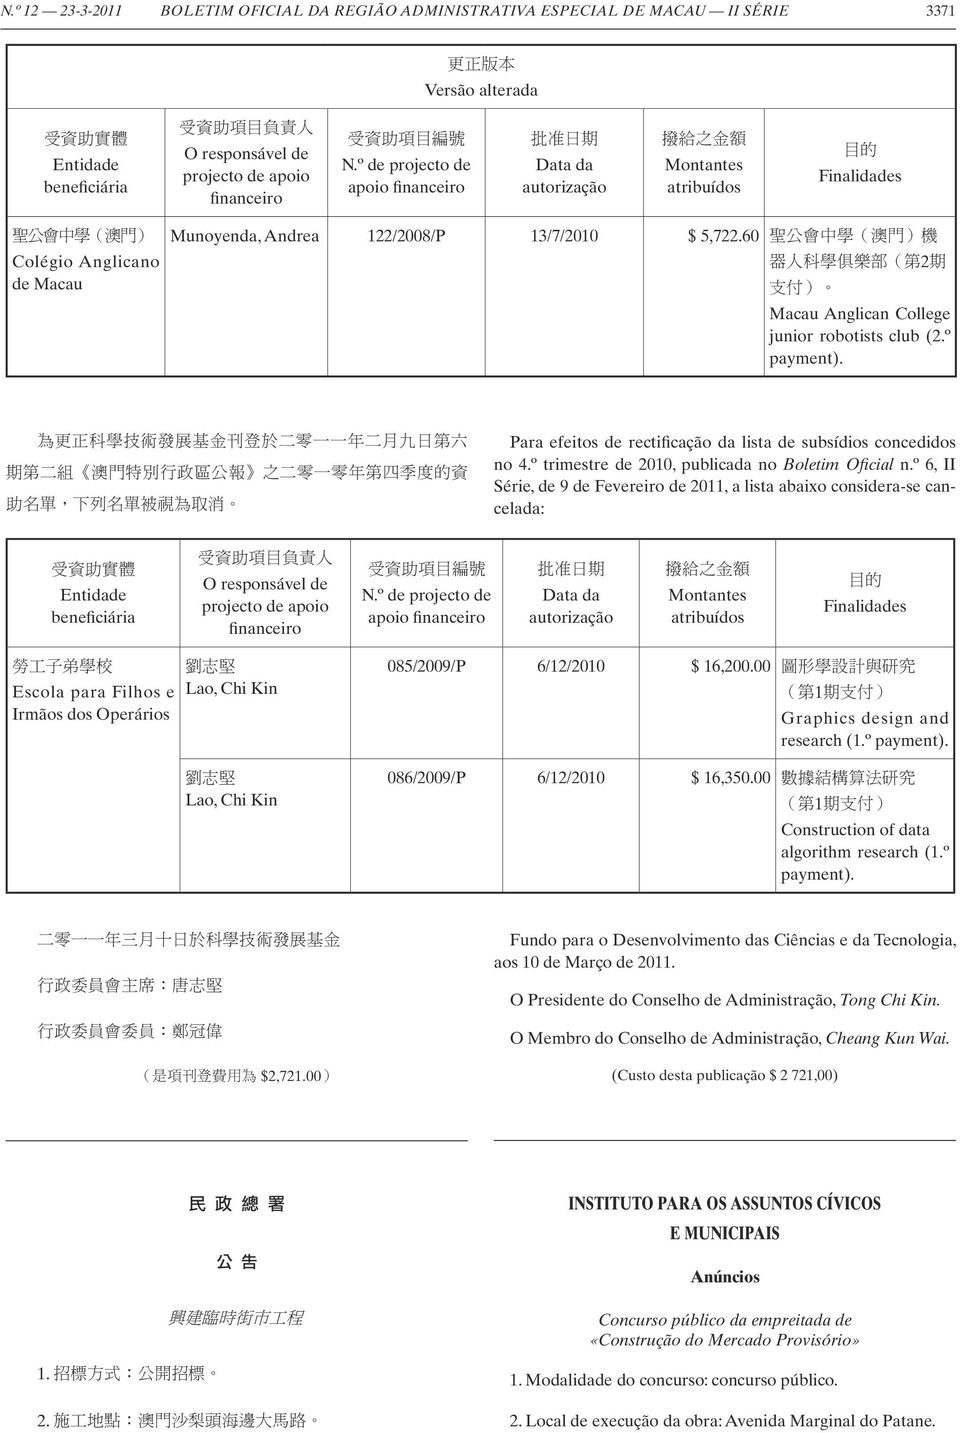 60 2 Macau Anglican College junior robotists club (2.º payment). Para efeitos de rectificação da lista de subsídios concedidos no 4.º trimestre de 2010, publicada no Boletim Oficial n.